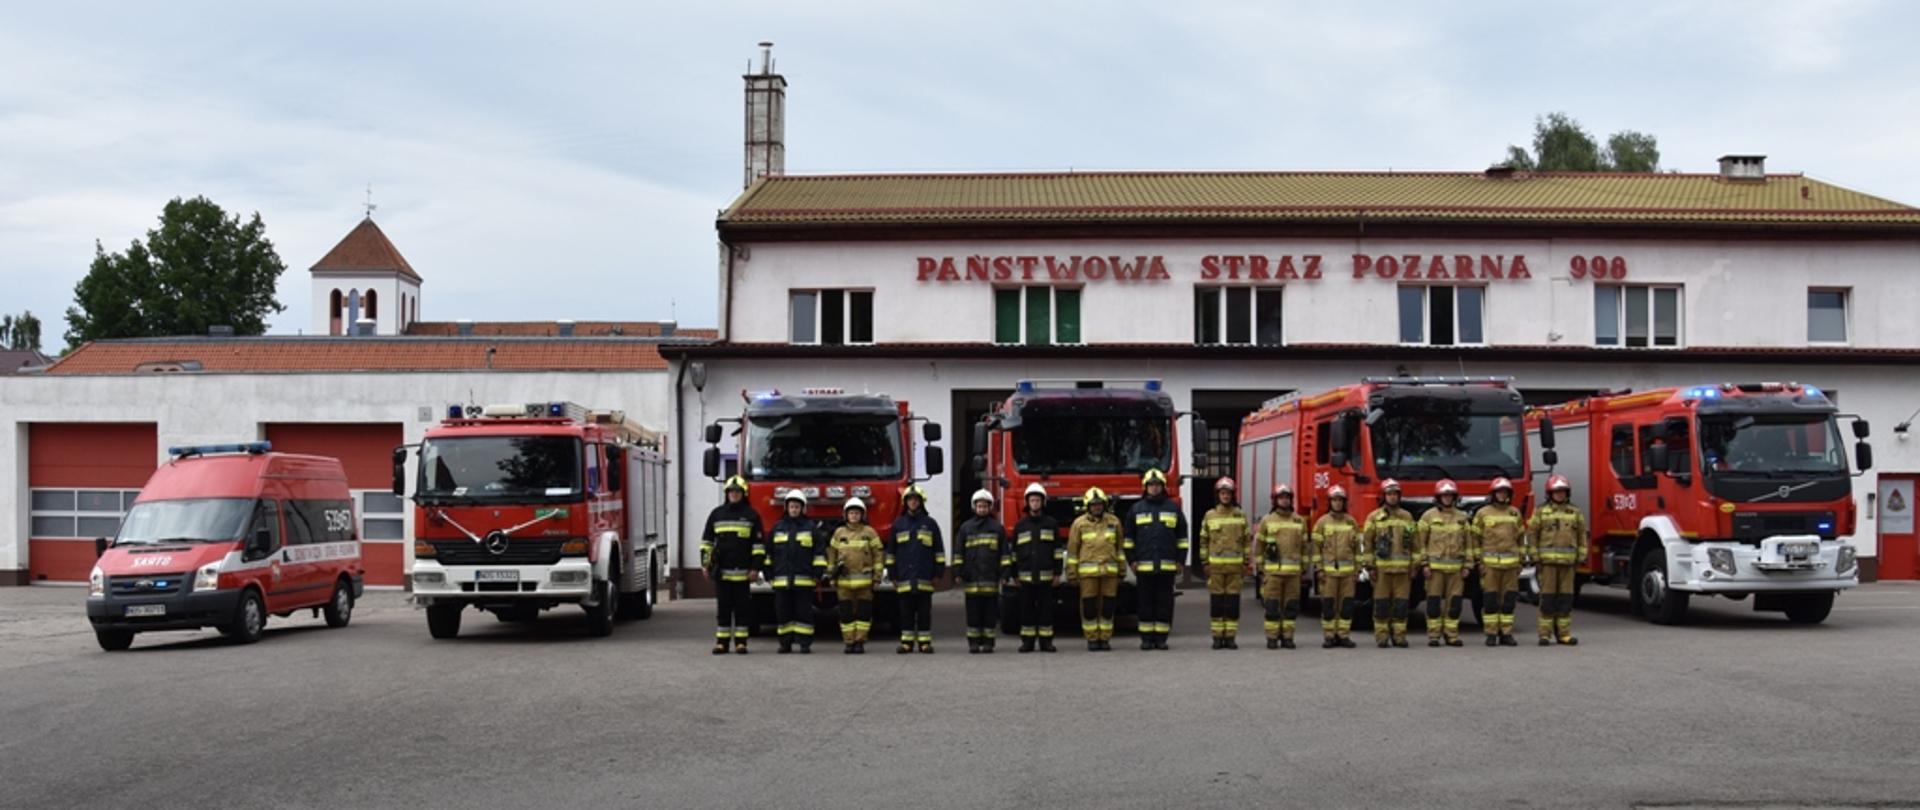 Strażacy stoją na zbiórce i przy dźwiękach alarmowych samochodów strażackich, oddają hołd poległym w Powstaniu Warszawskim. 